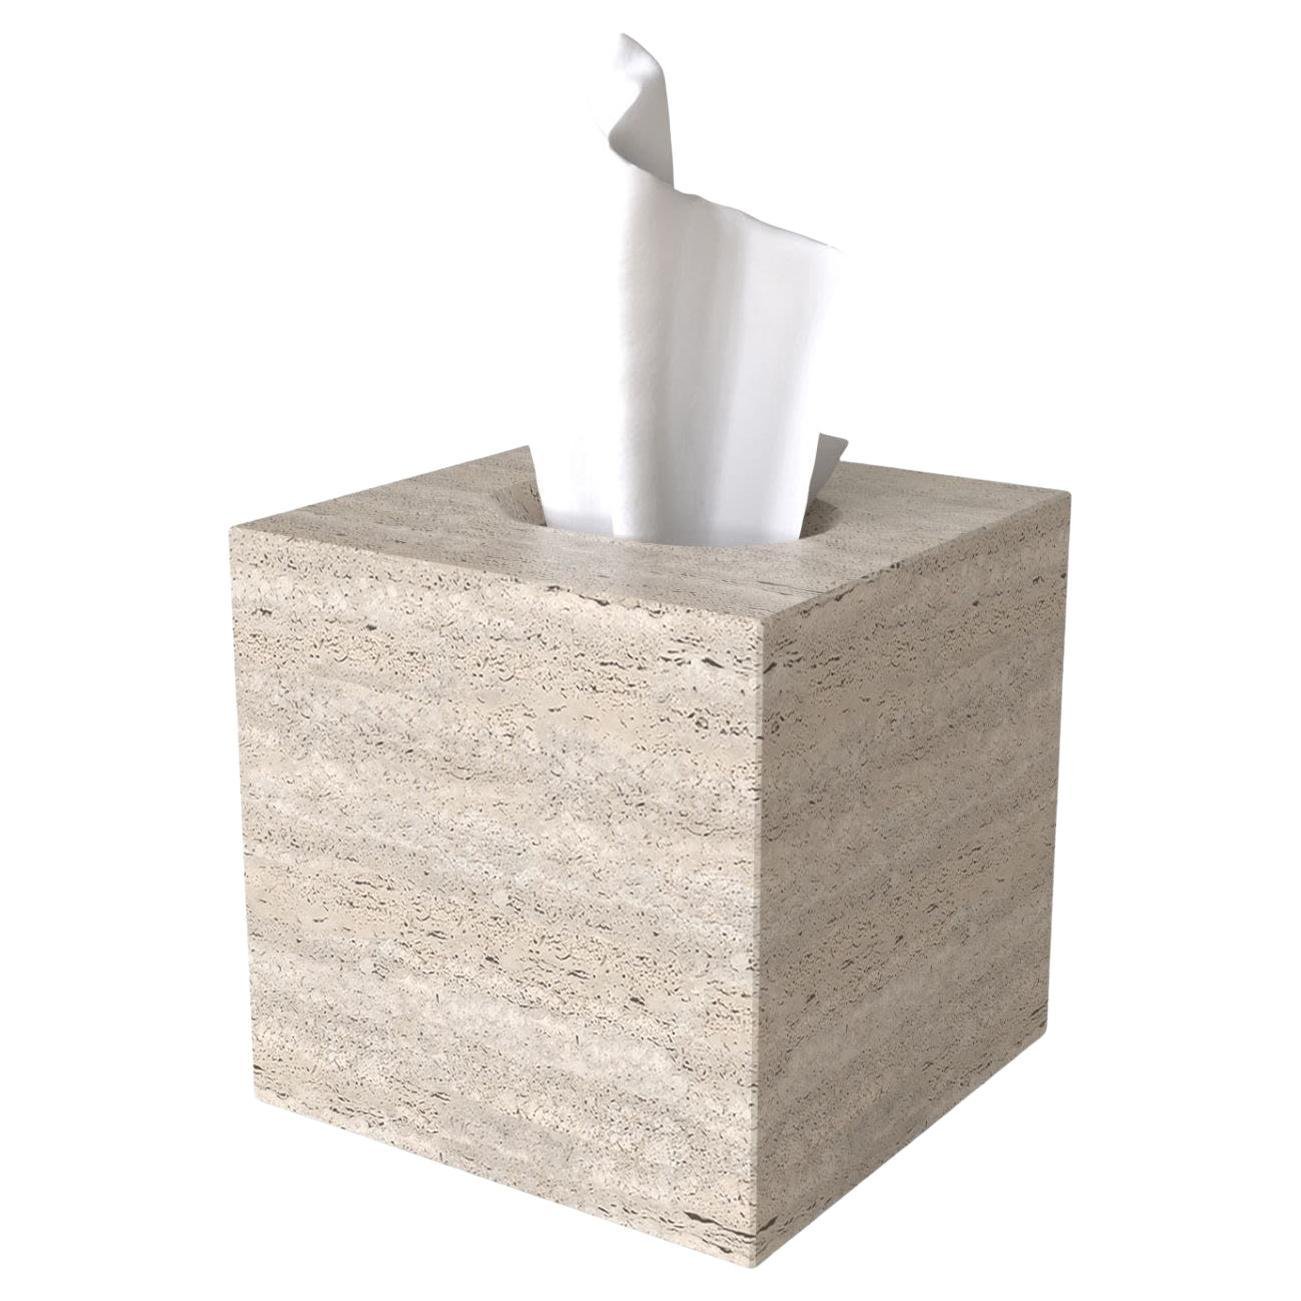 travertine-tissue-box-cover-natural-stone-tissue-box-holder-bathroom-vanity-decor